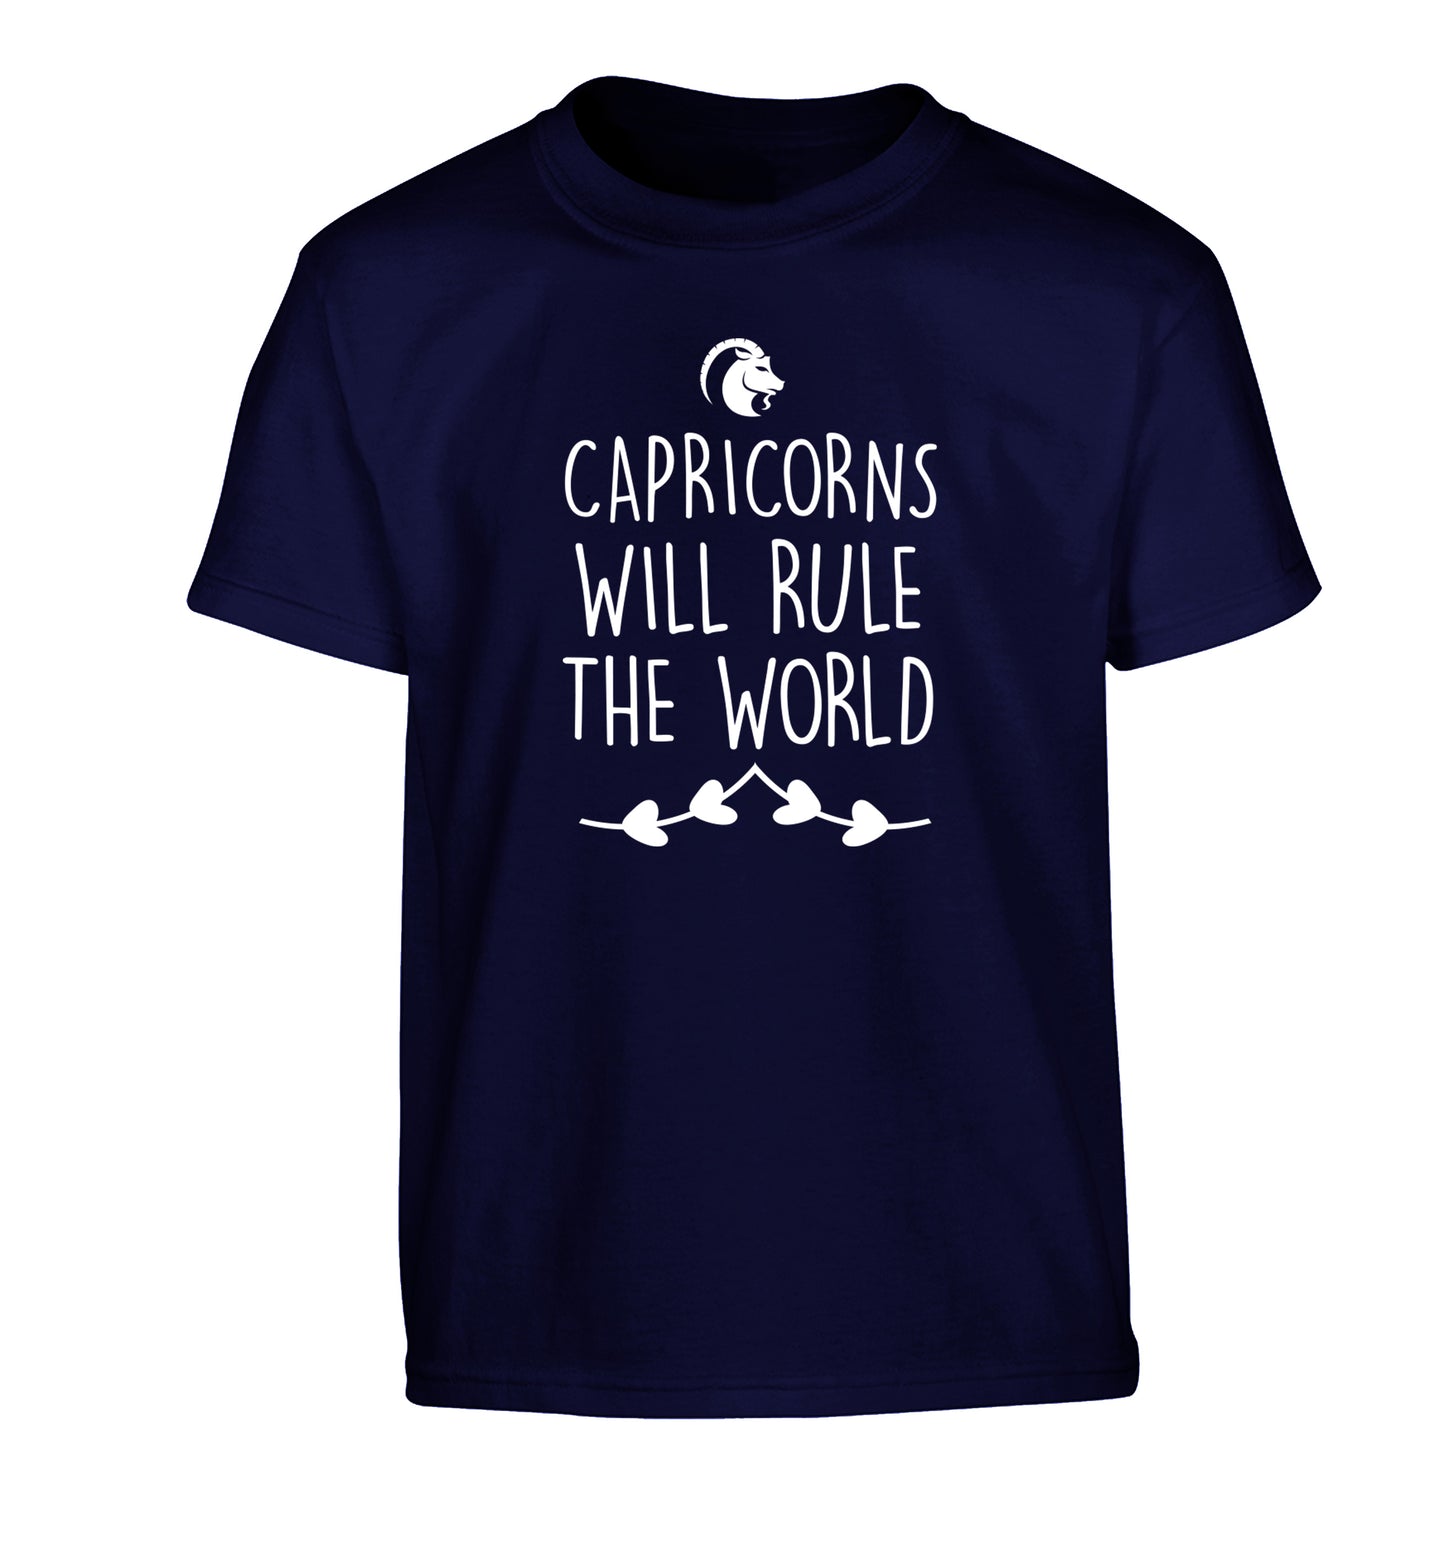 Capricorns will rule the world Children's navy Tshirt 12-13 Years